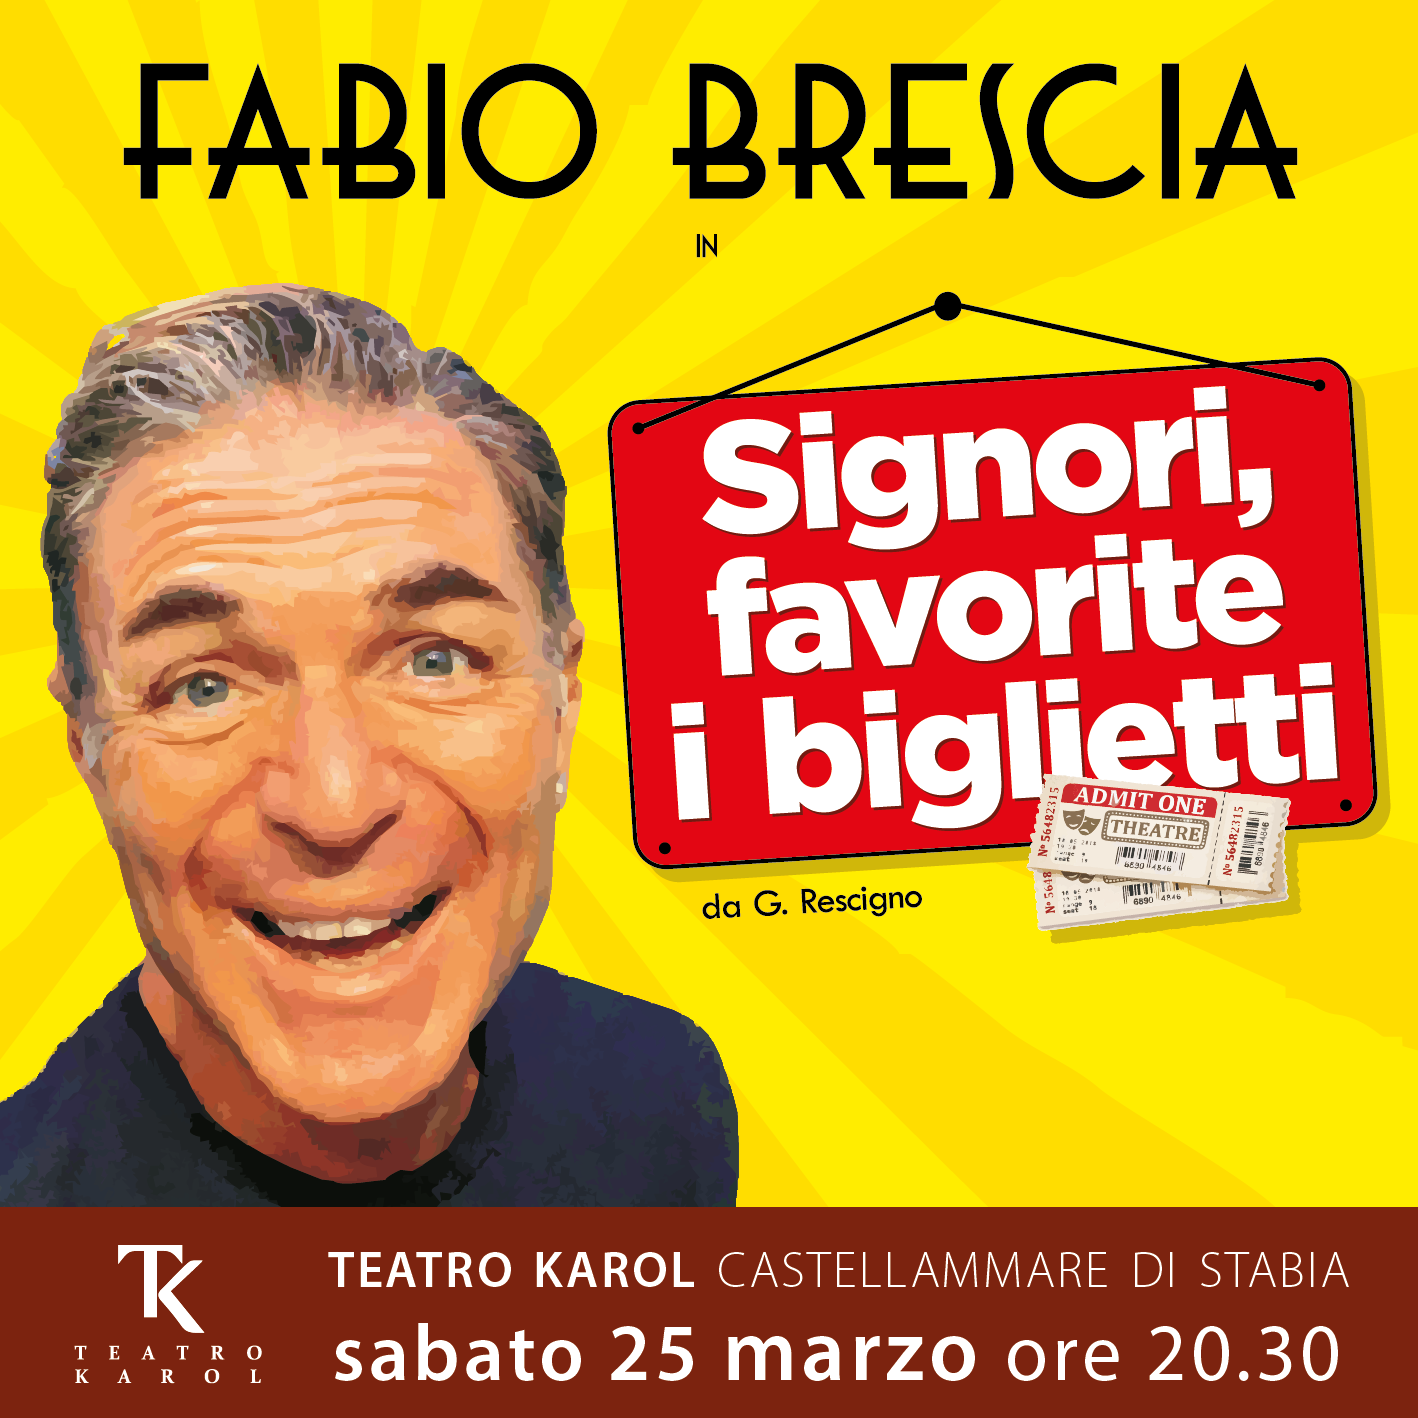 Al TK di Castellammare di Stabia, Fabio Brescia in “Signori, favorite il biglietto”.